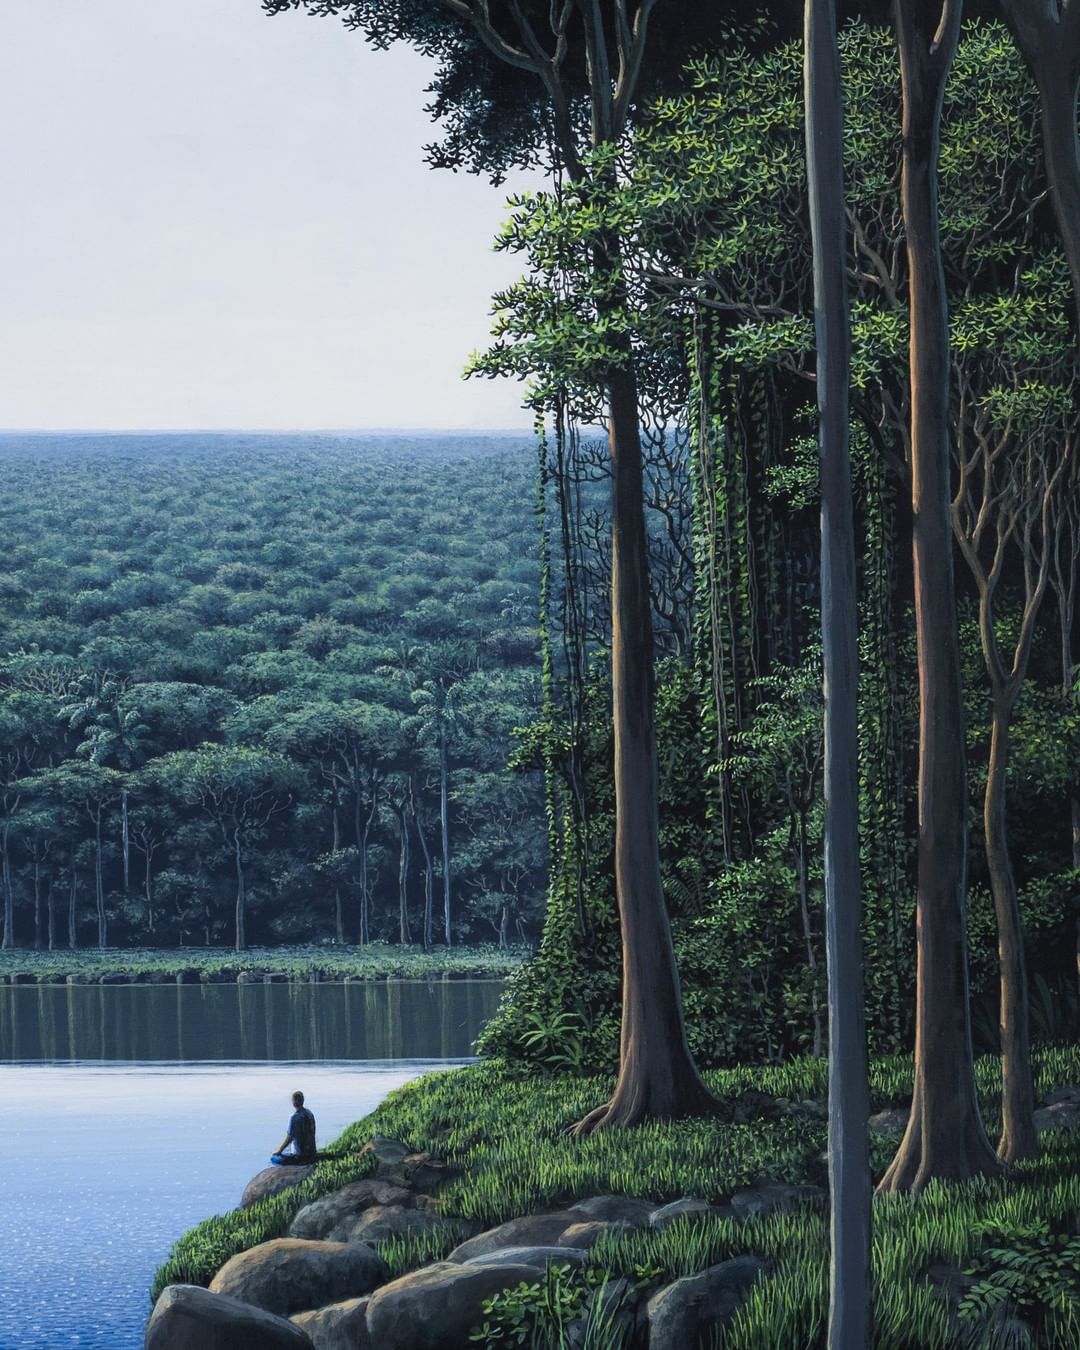 Томас Санчес рисует гигантские леса и массивные ландшафты